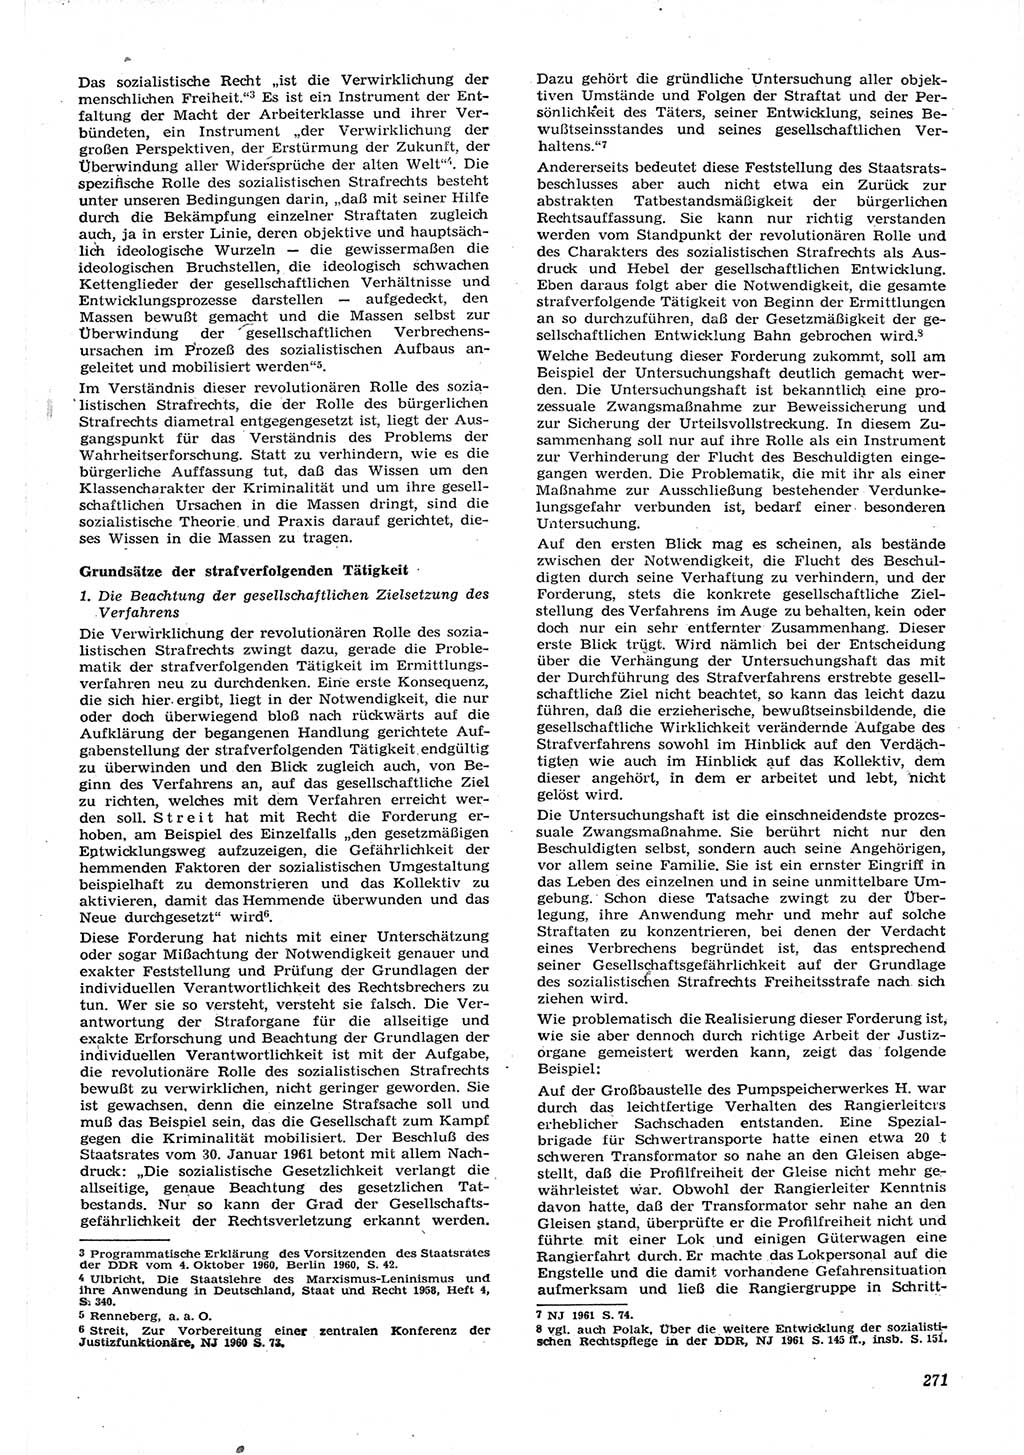 Neue Justiz (NJ), Zeitschrift für Recht und Rechtswissenschaft [Deutsche Demokratische Republik (DDR)], 15. Jahrgang 1961, Seite 271 (NJ DDR 1961, S. 271)